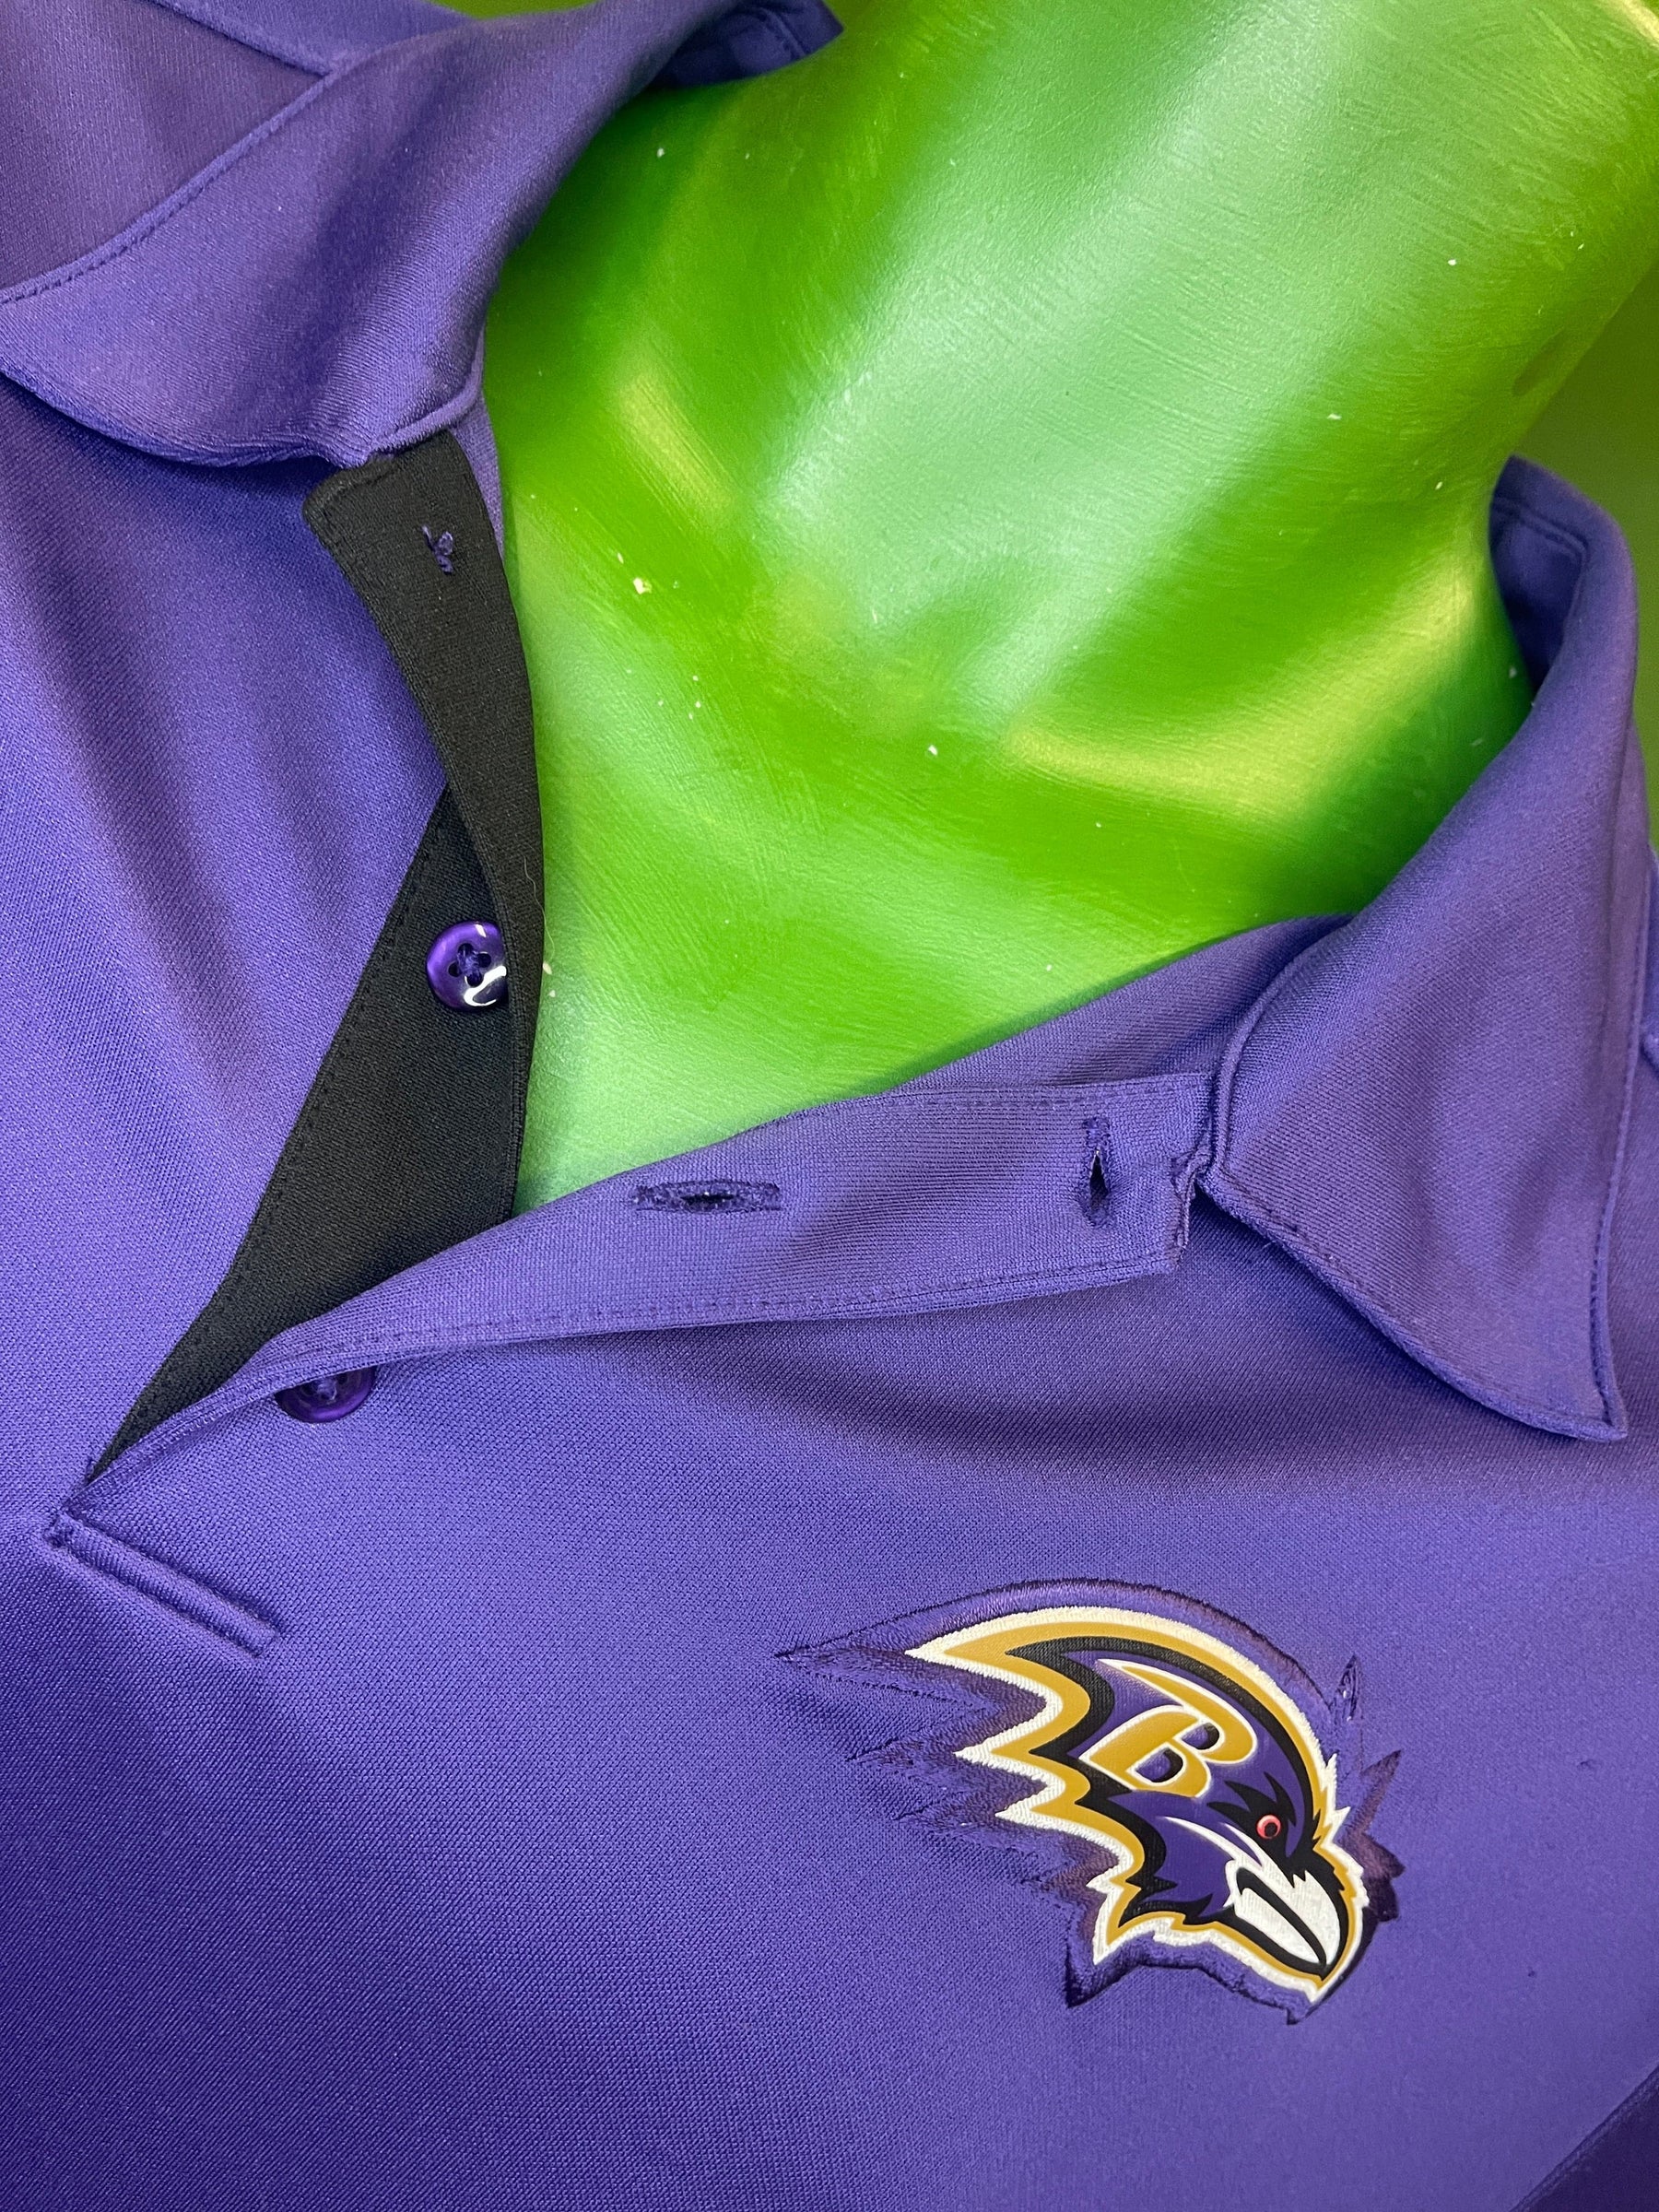 NFL Baltimore Ravens Dri-Fit Purple Polo Shirt Men's Large